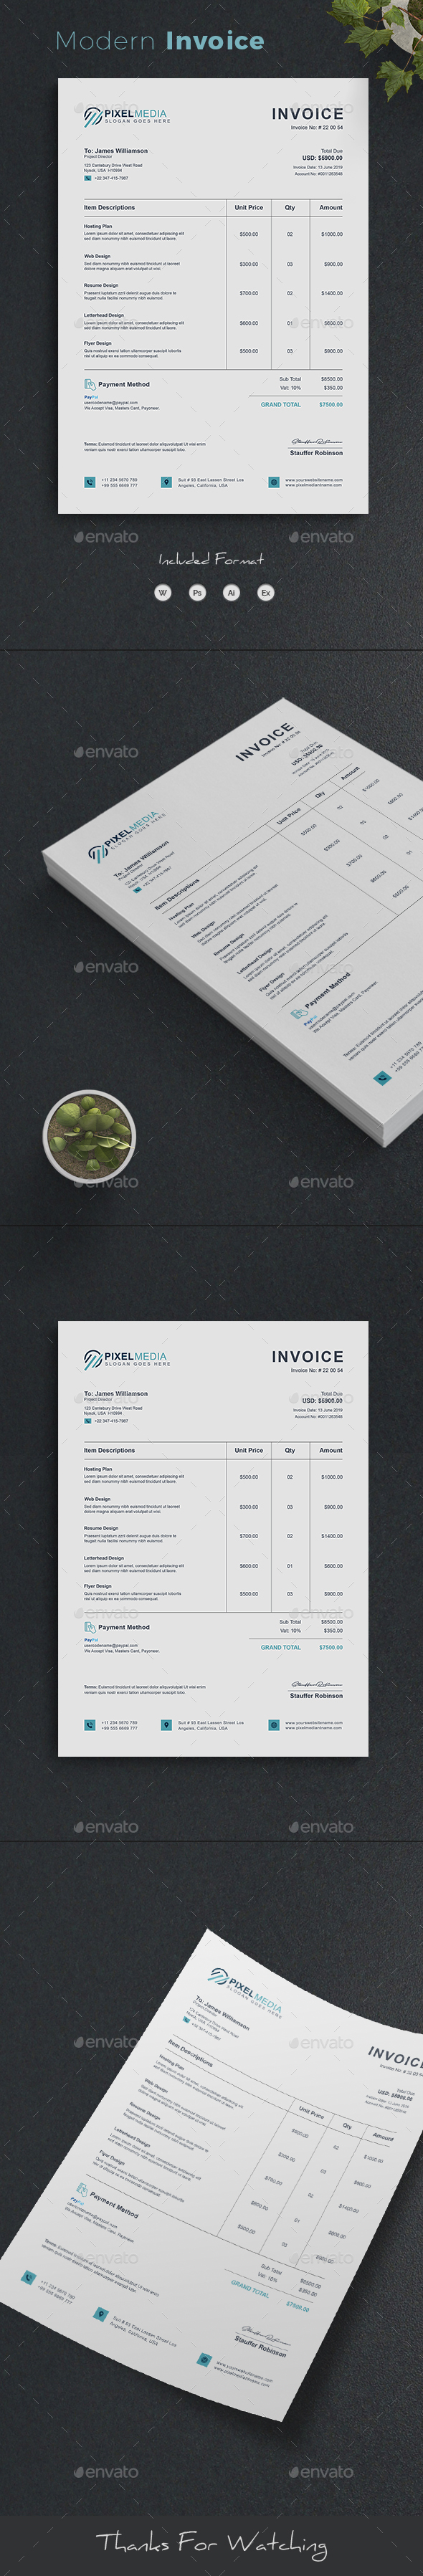 Invoice Excel